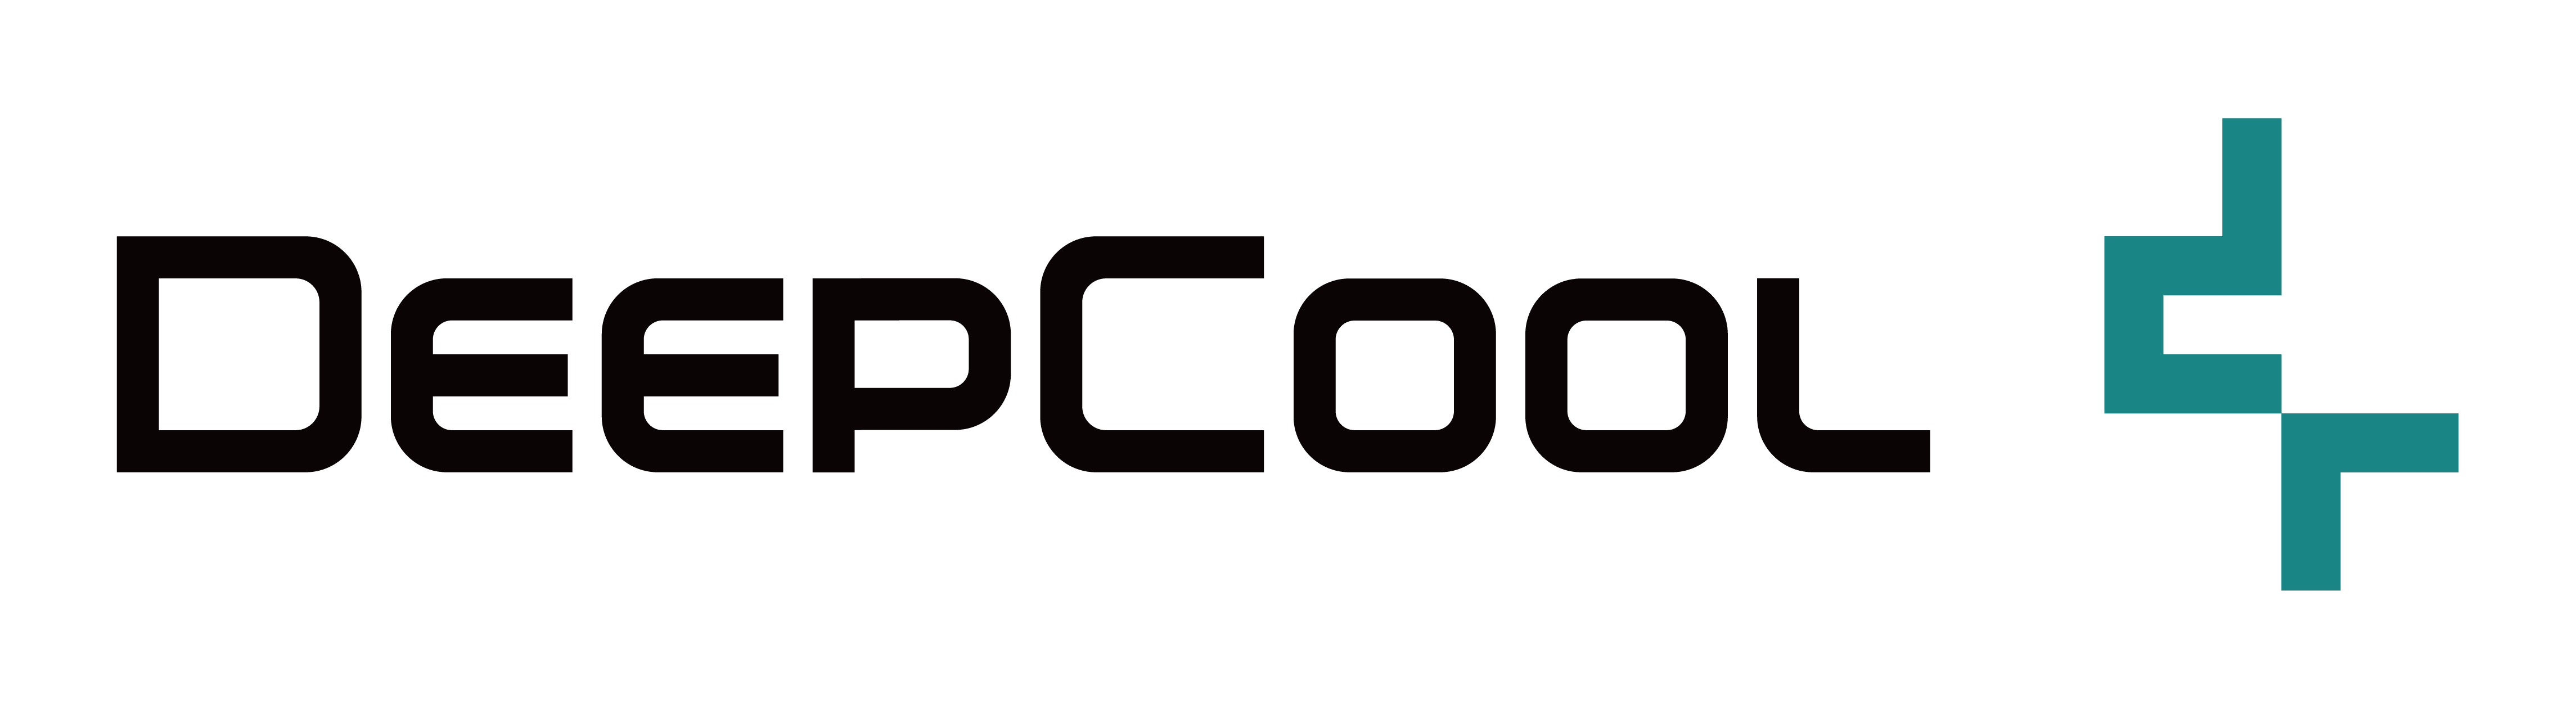 DeepCool Banner Logo